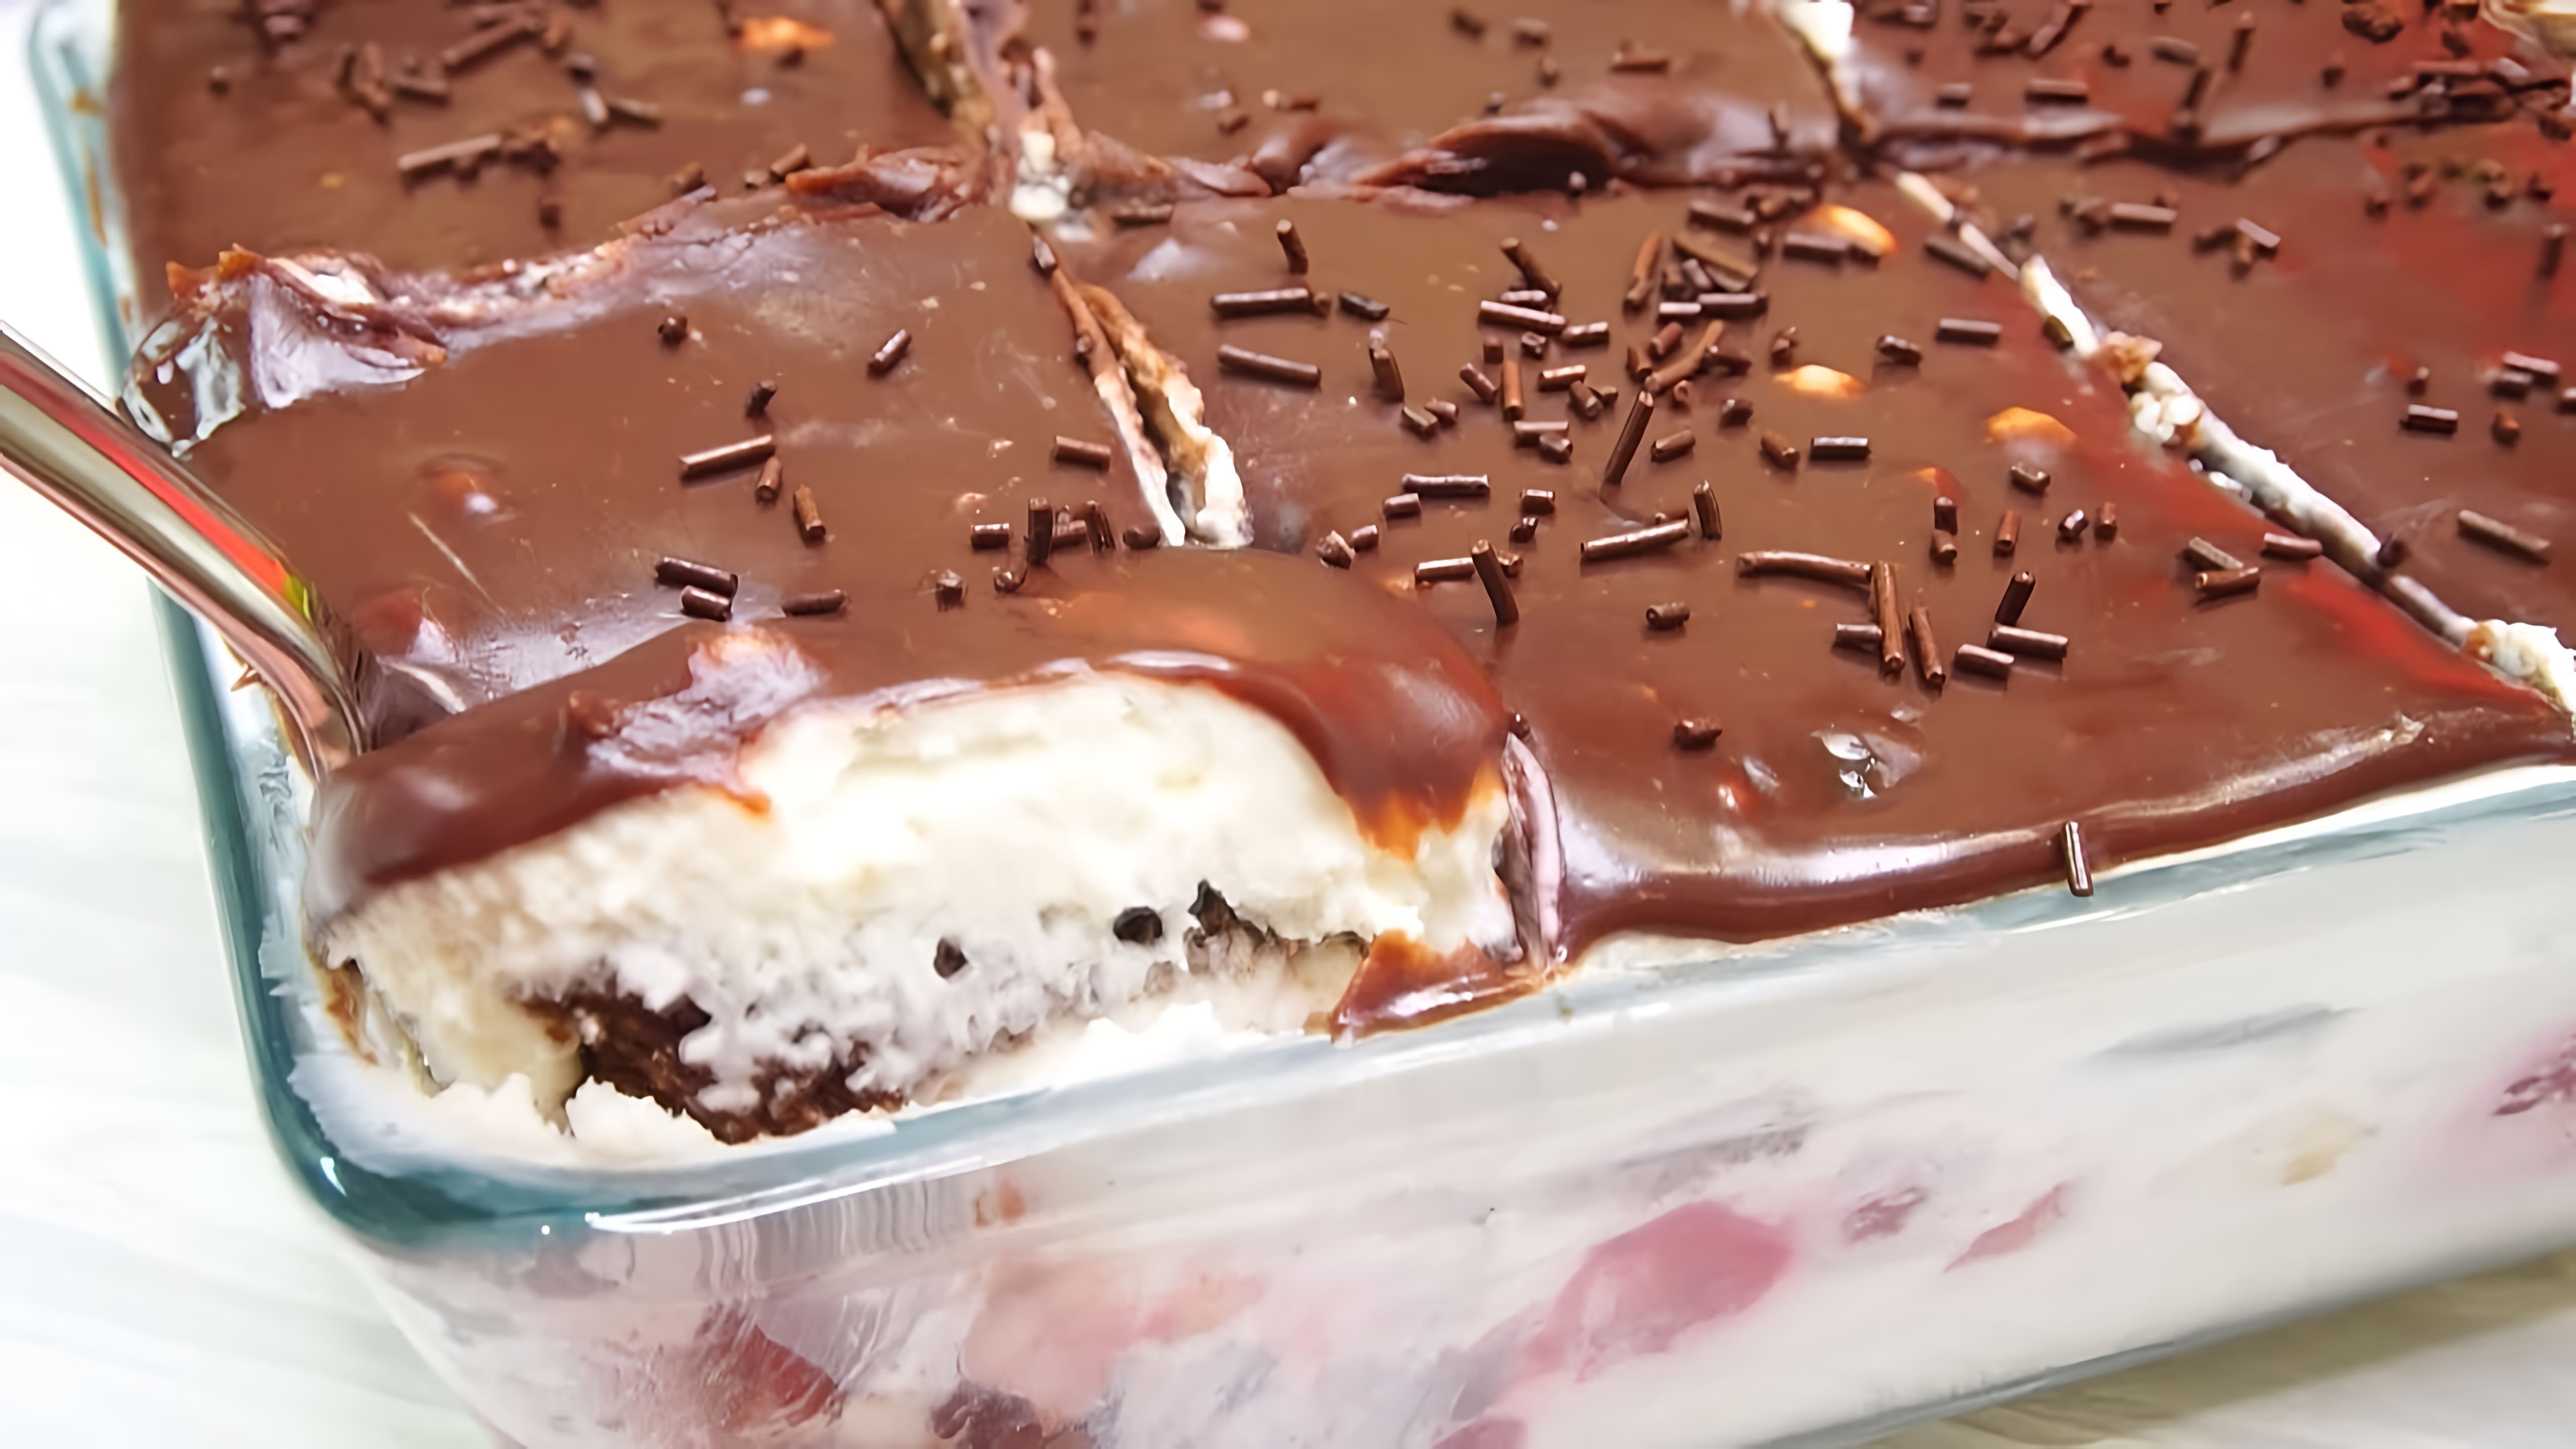 В этом видео демонстрируется процесс приготовления трайфла - десерта, который стал очень популярным в последние месяцы